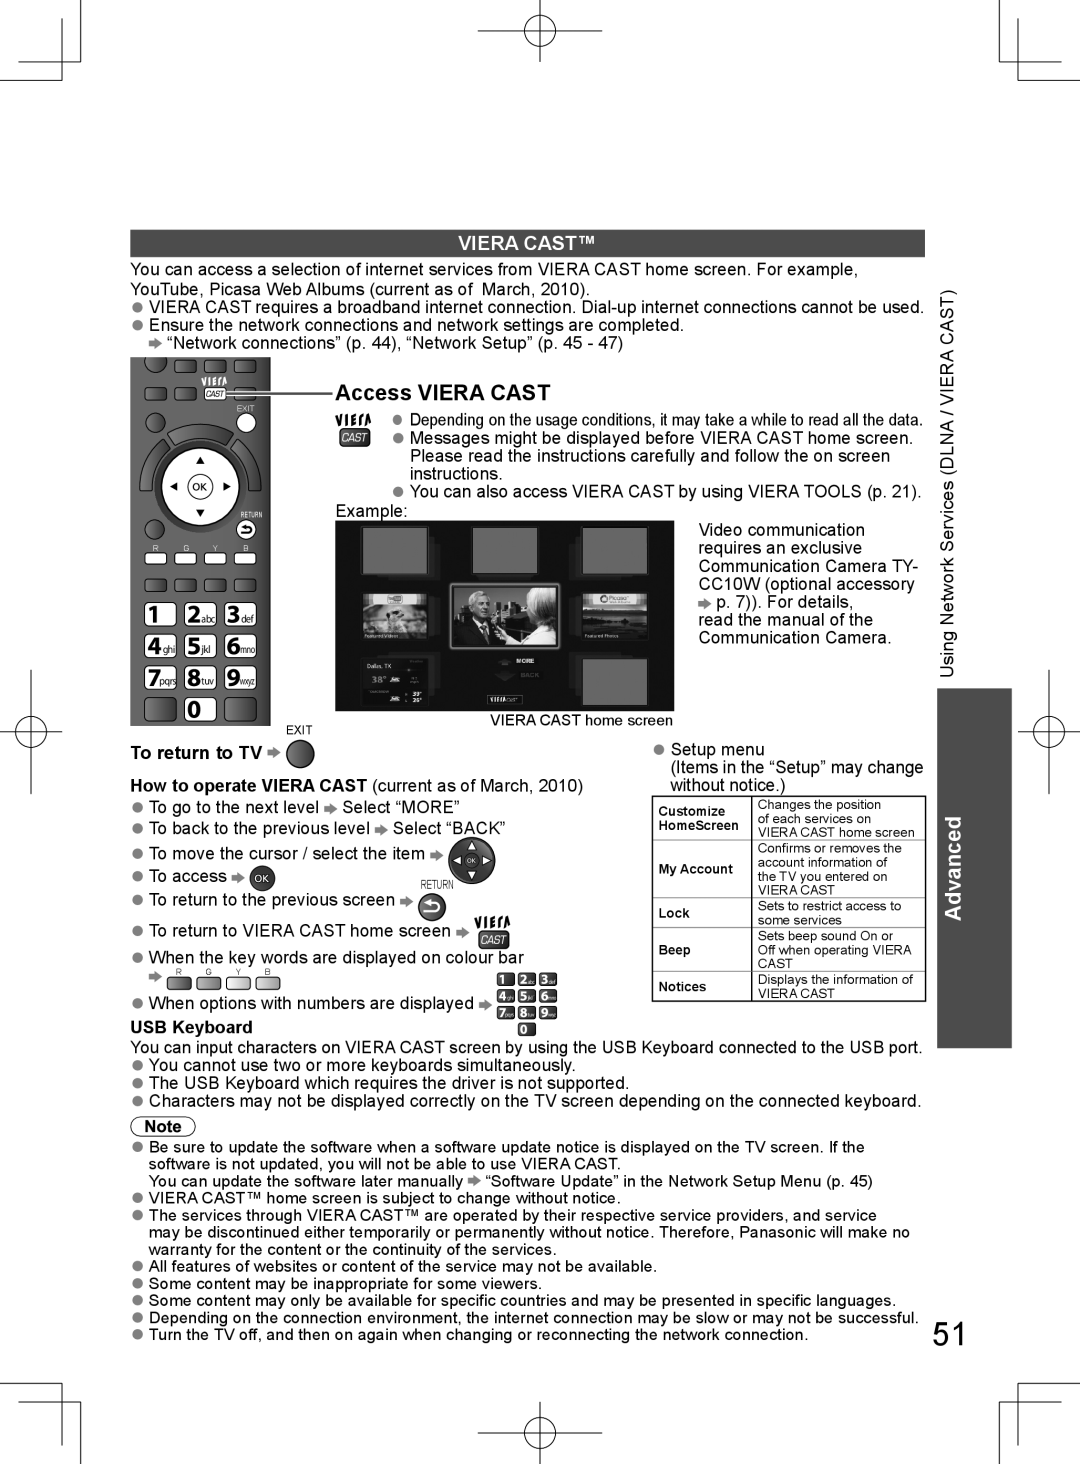 Panasonic TH-L32D25M manual Access VIERA CAST, Viera Cast, USB Keyboard, Advanced, To return to TV 